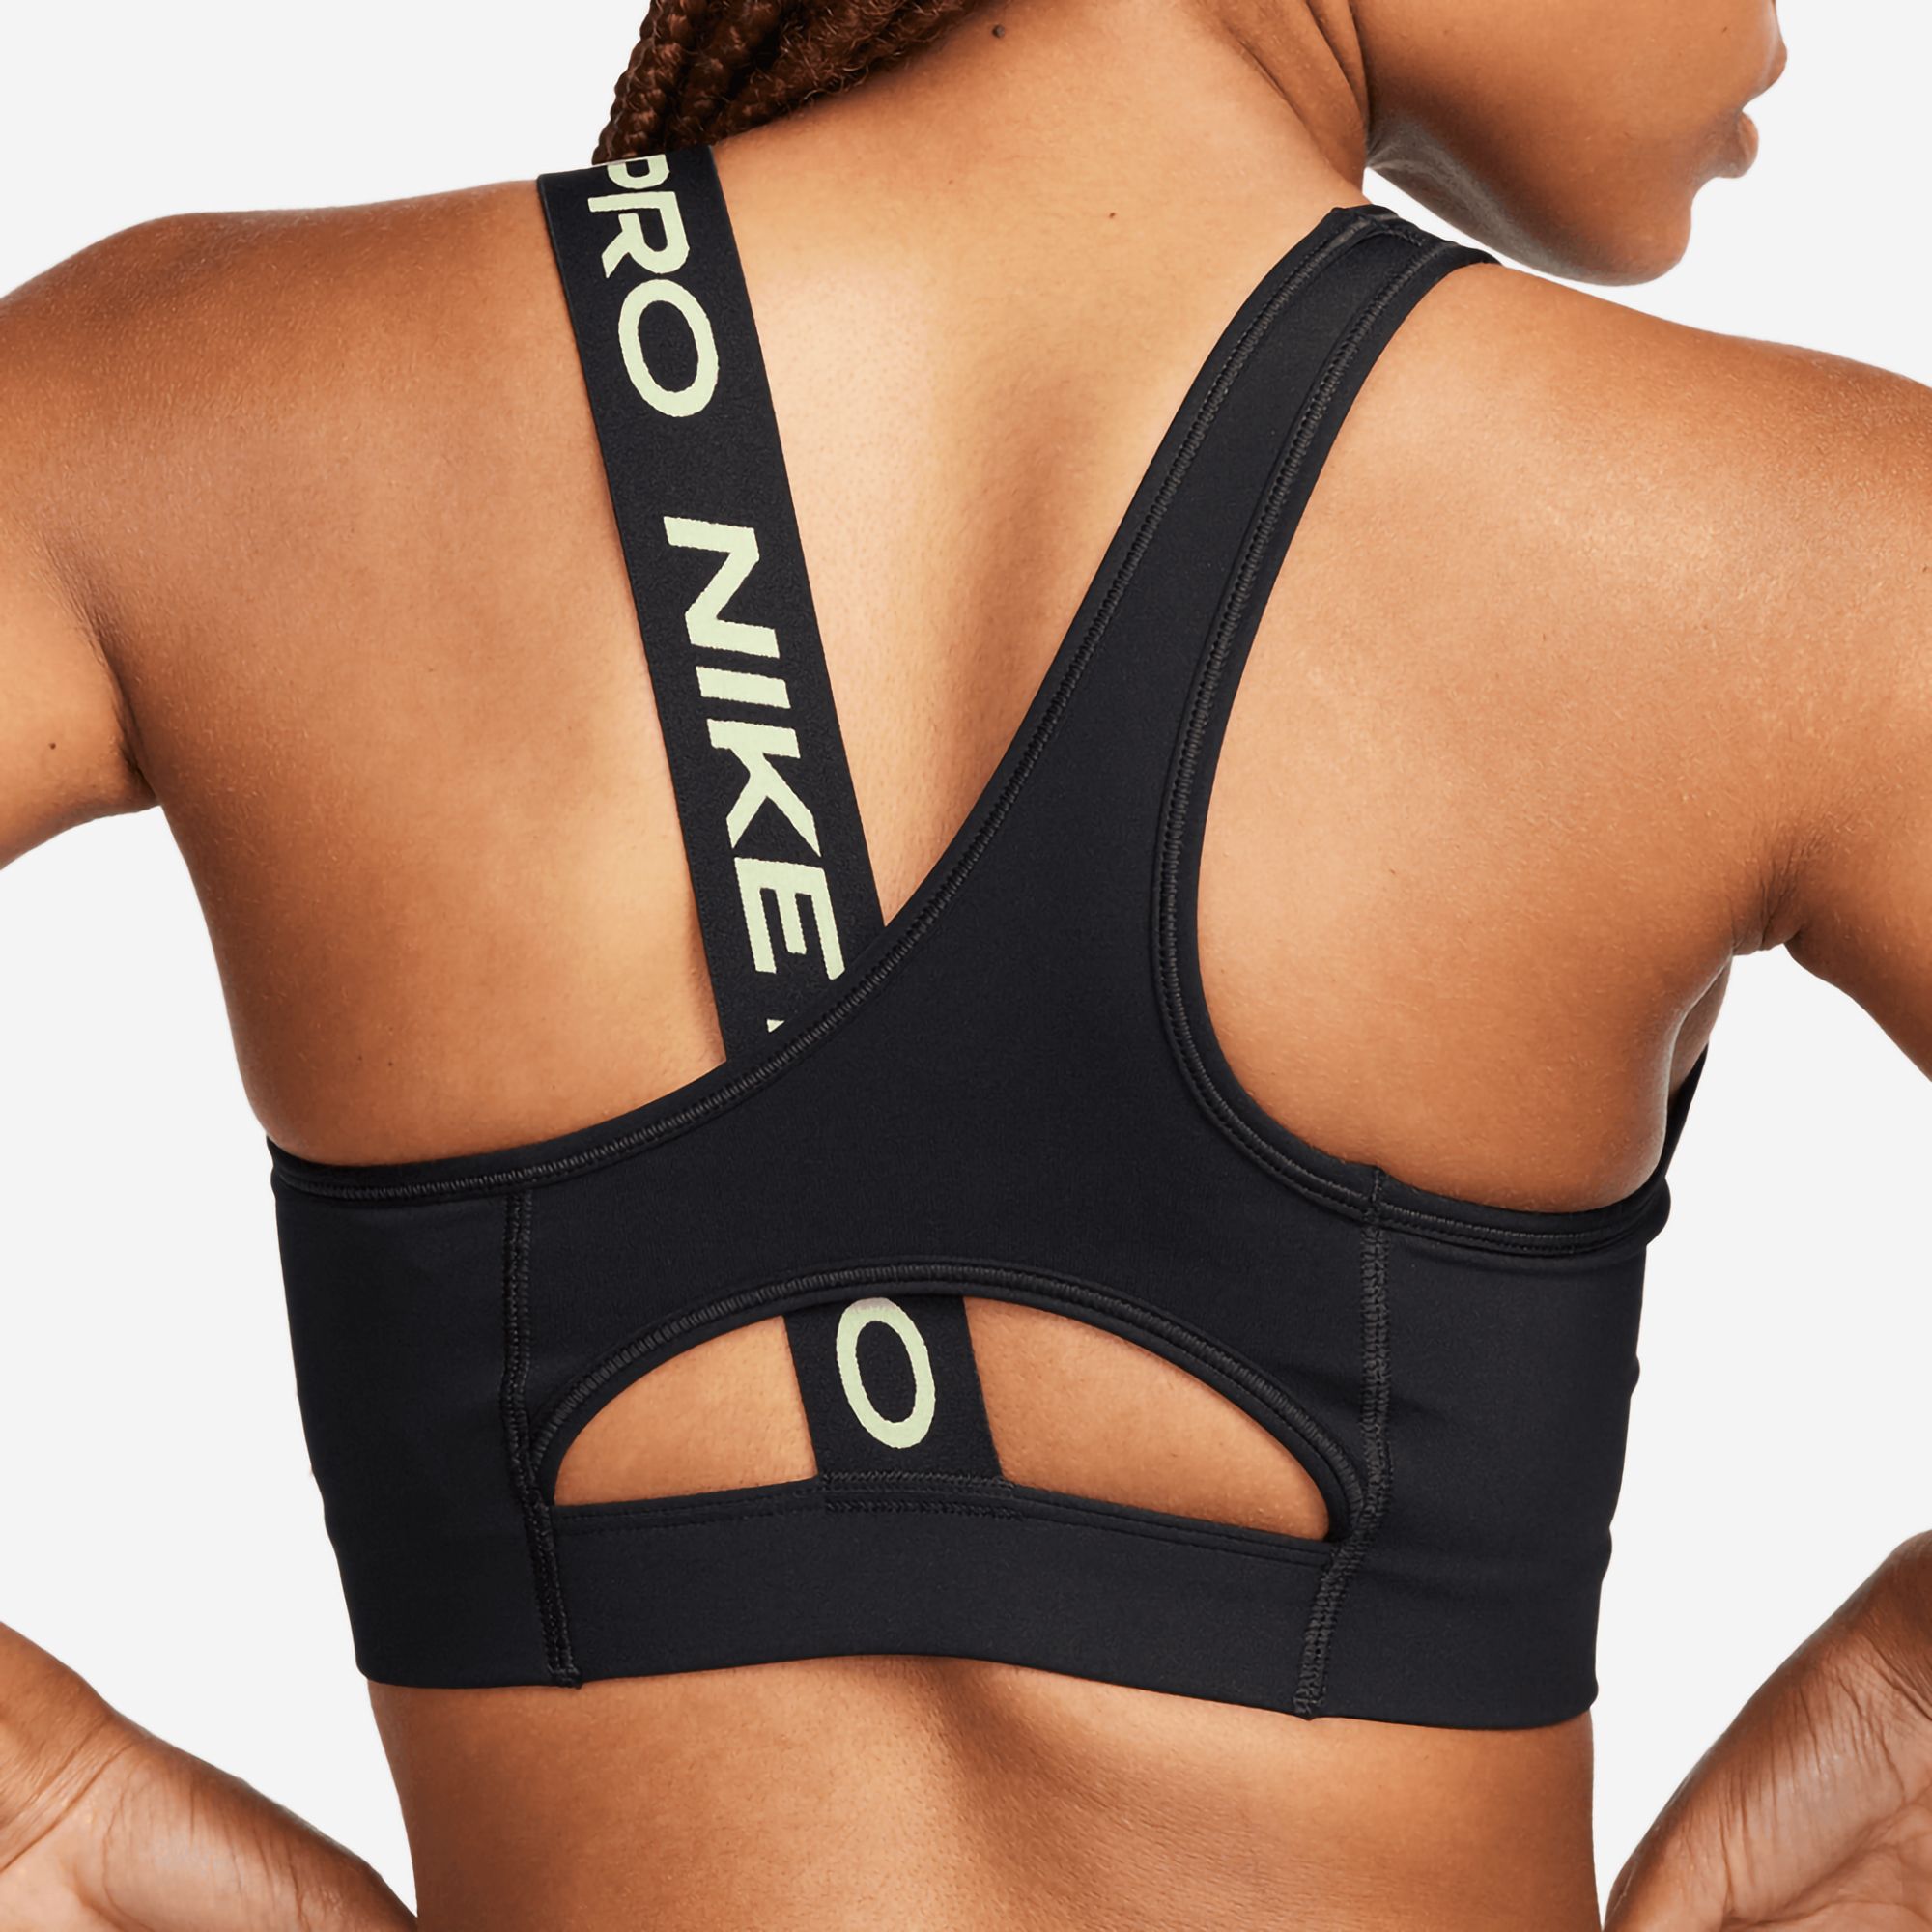 Nike Pro Training Swoosh Dri-FIT asymmetirc medium support sports bra in  black